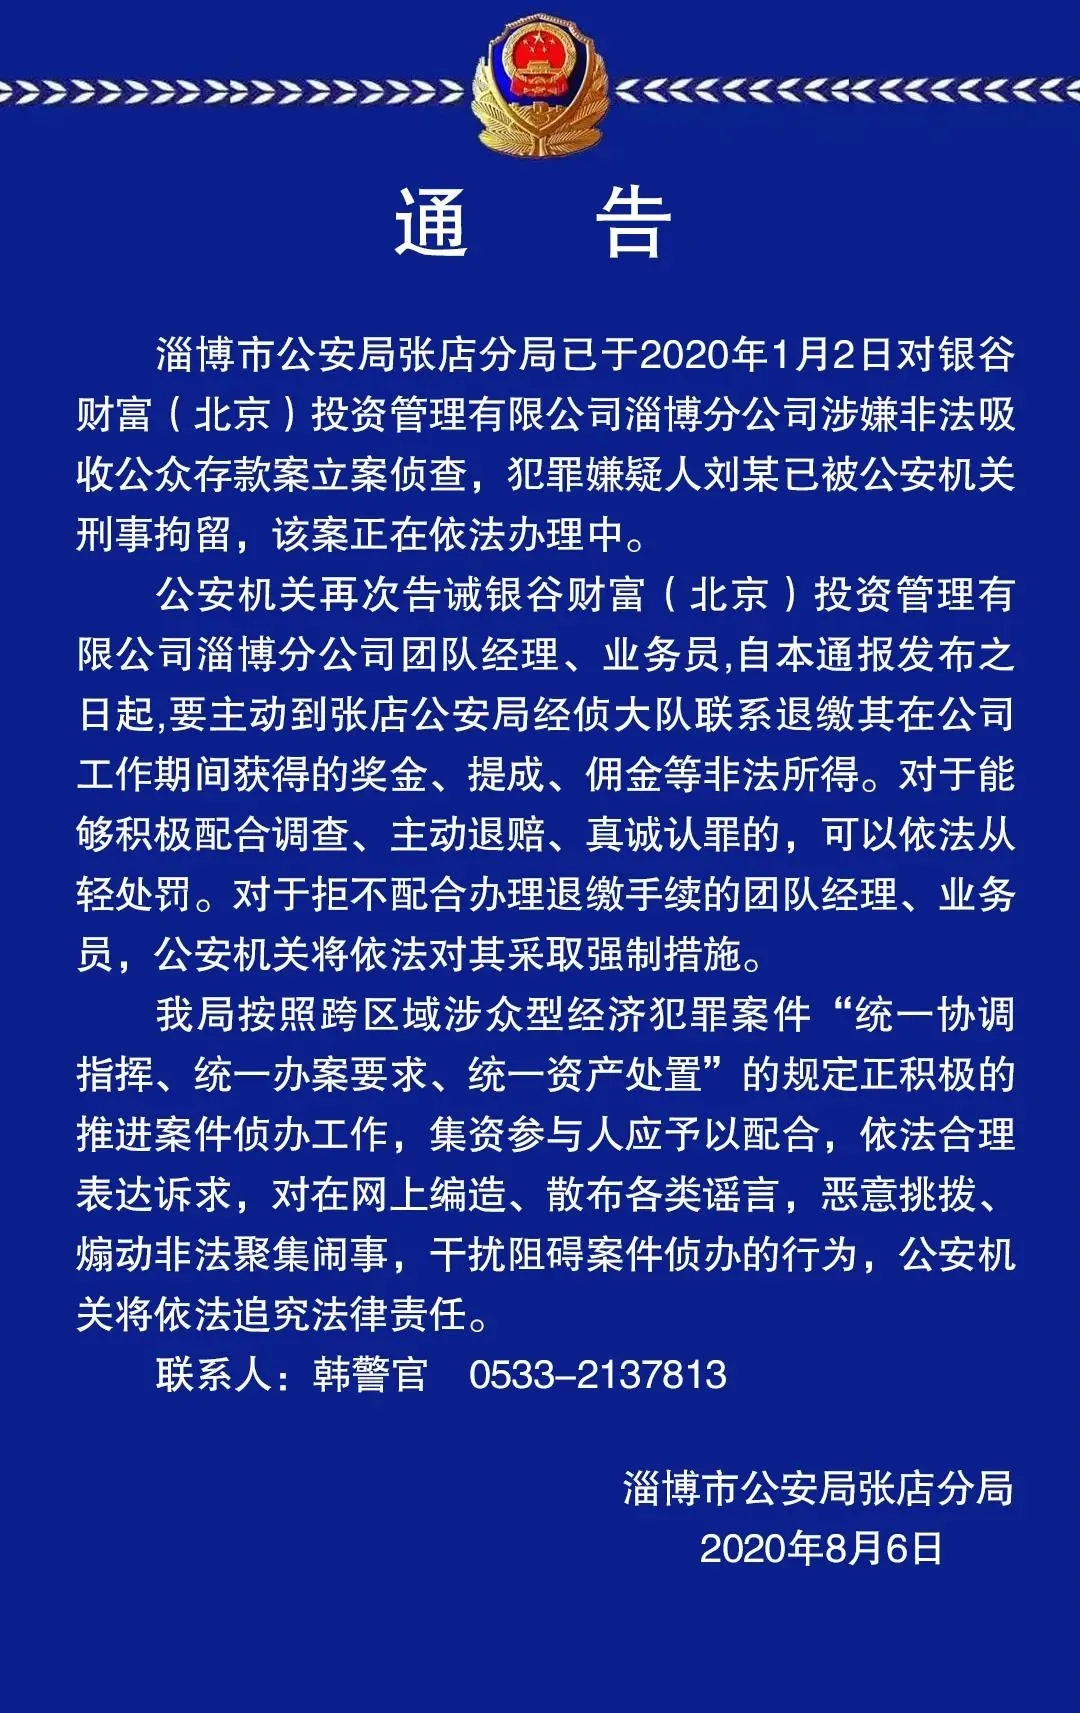 注意！淄博市公安局张店分局发布通告